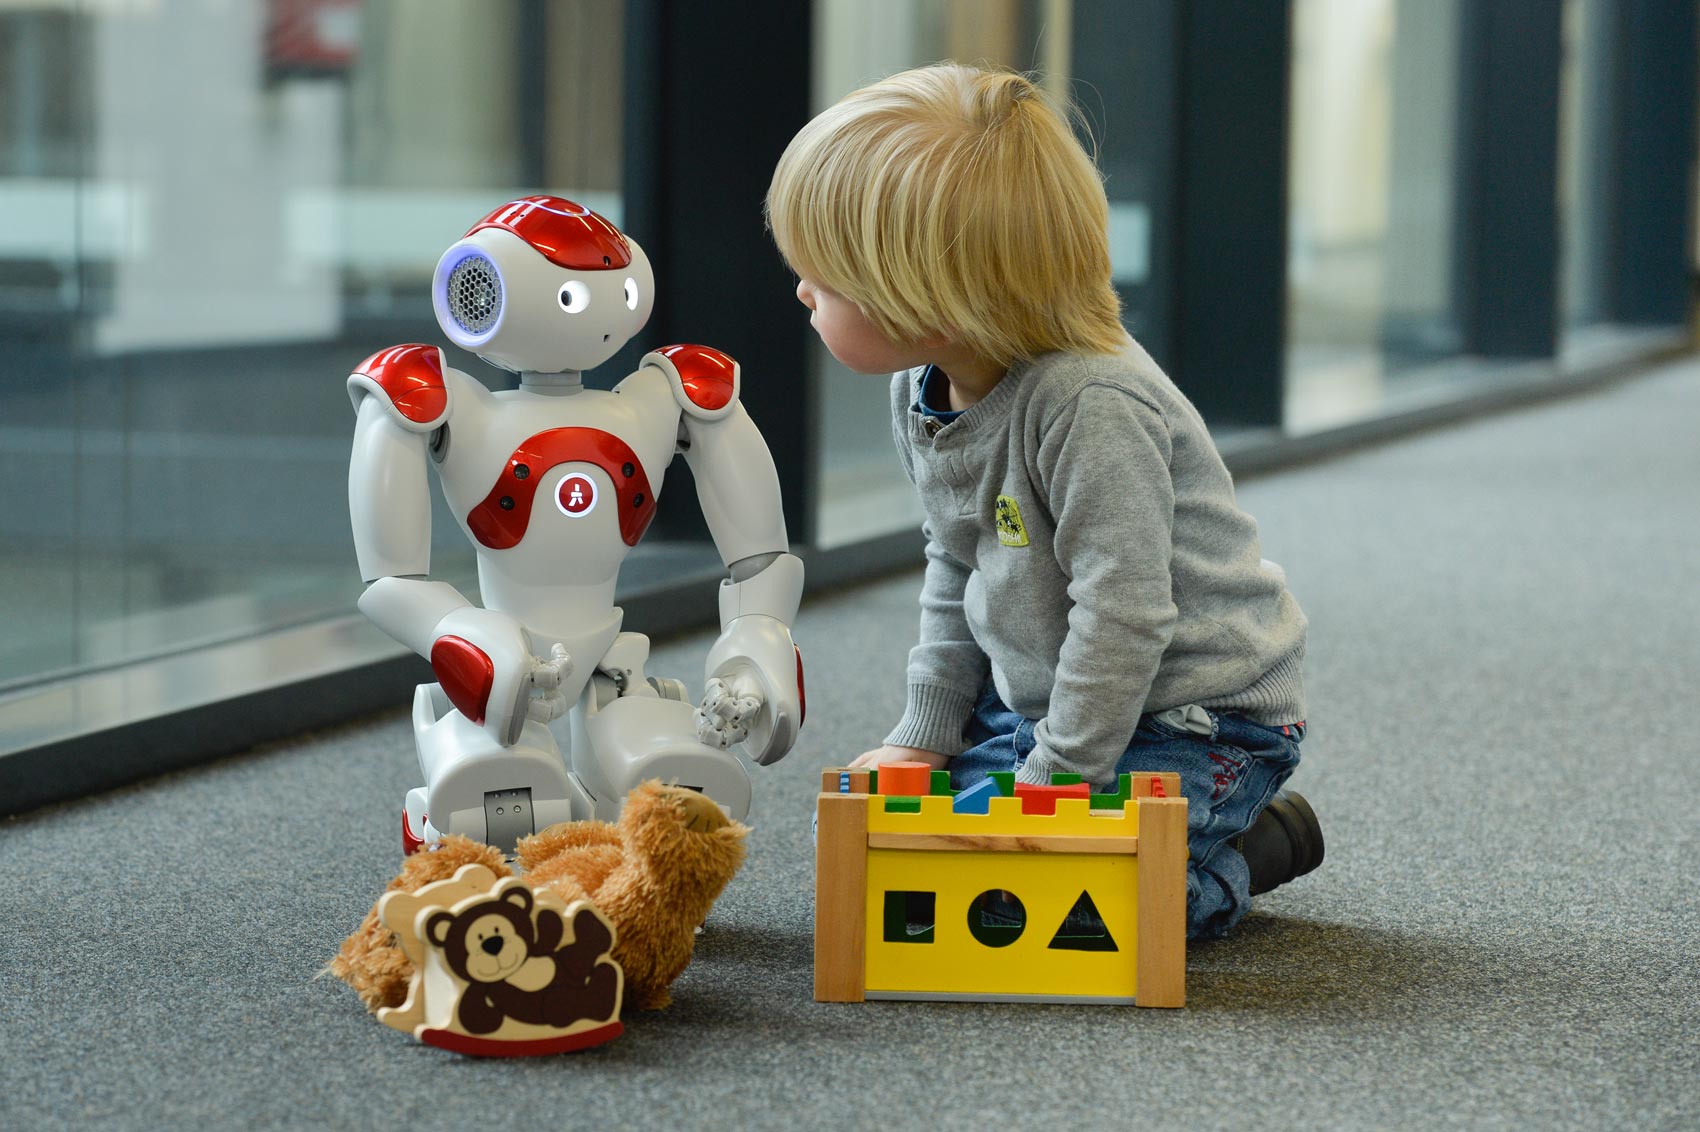 Kind und humanoider Roboter spielen zusammen